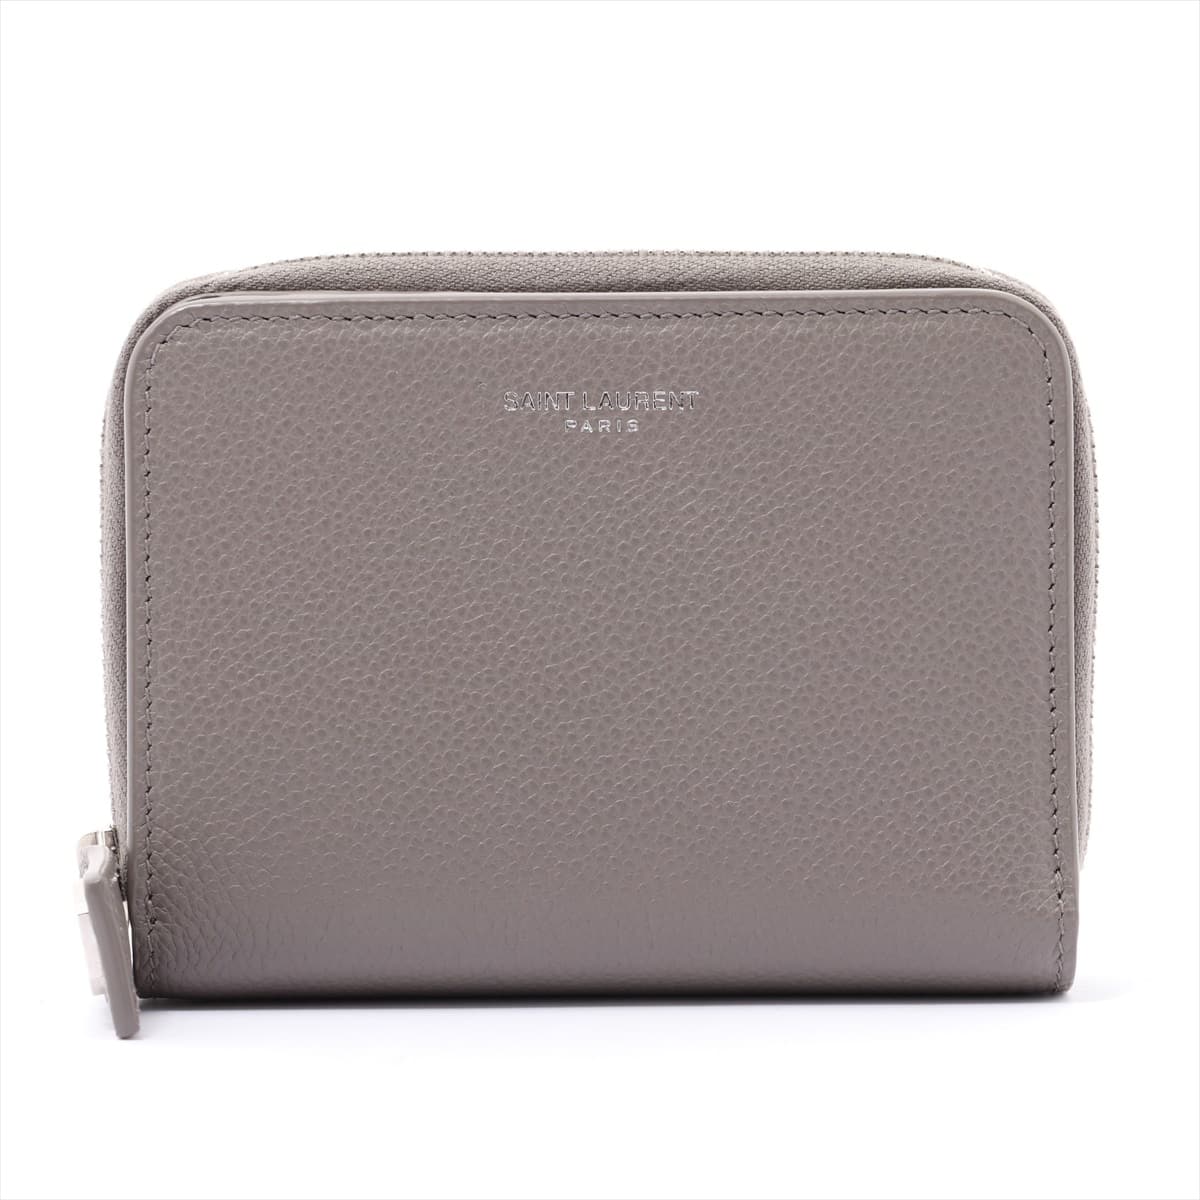 Saint Laurent Paris Classic Leather Wallet Grey